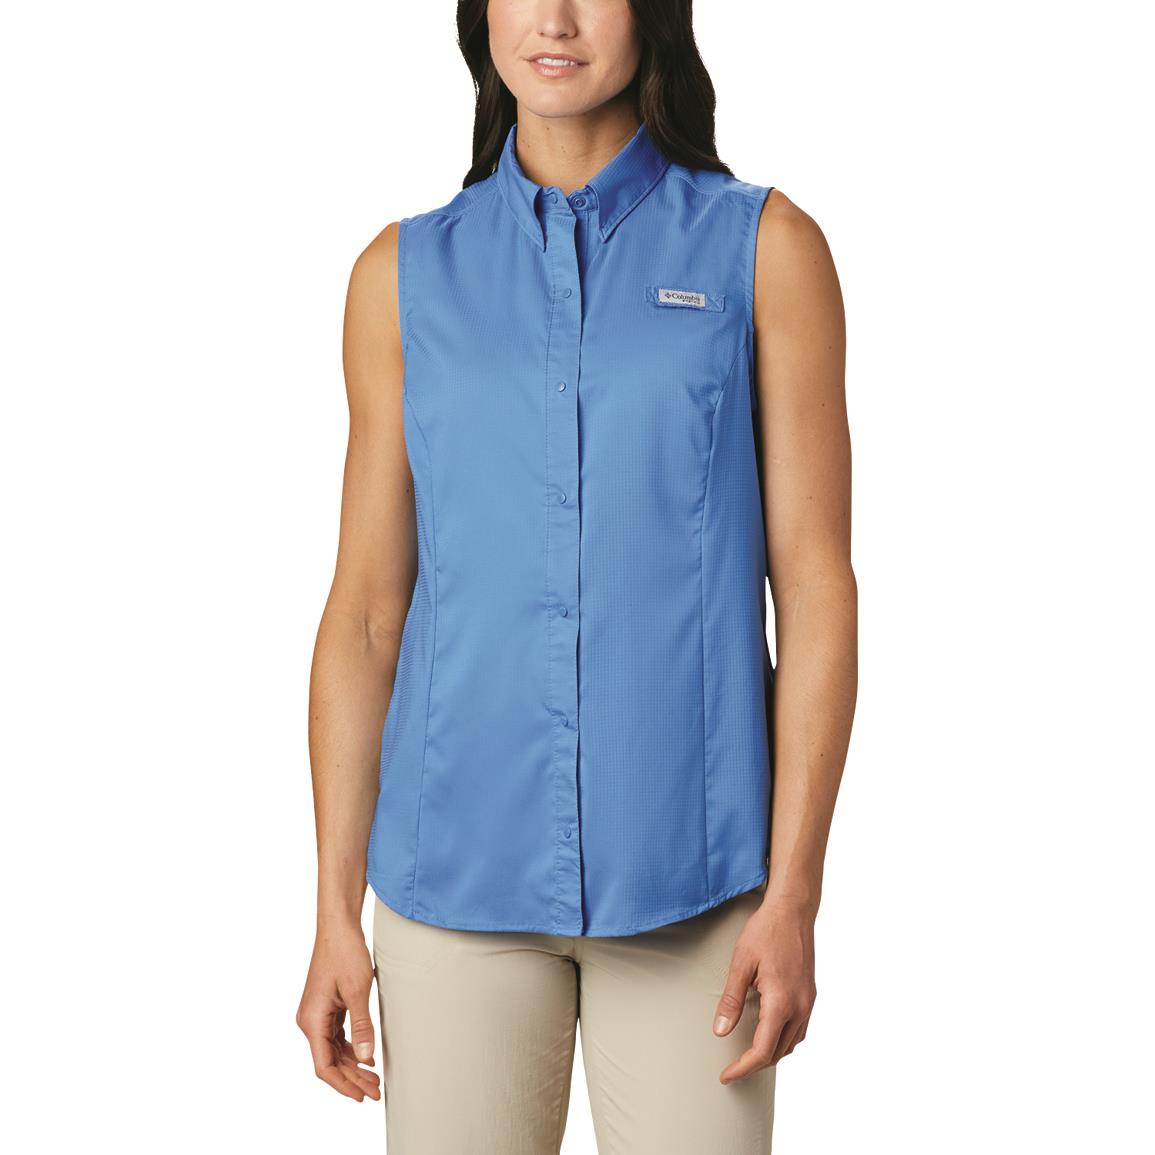 Columbia Women's PFG Tamiami Sleeveless Shirt, Stormy Blue